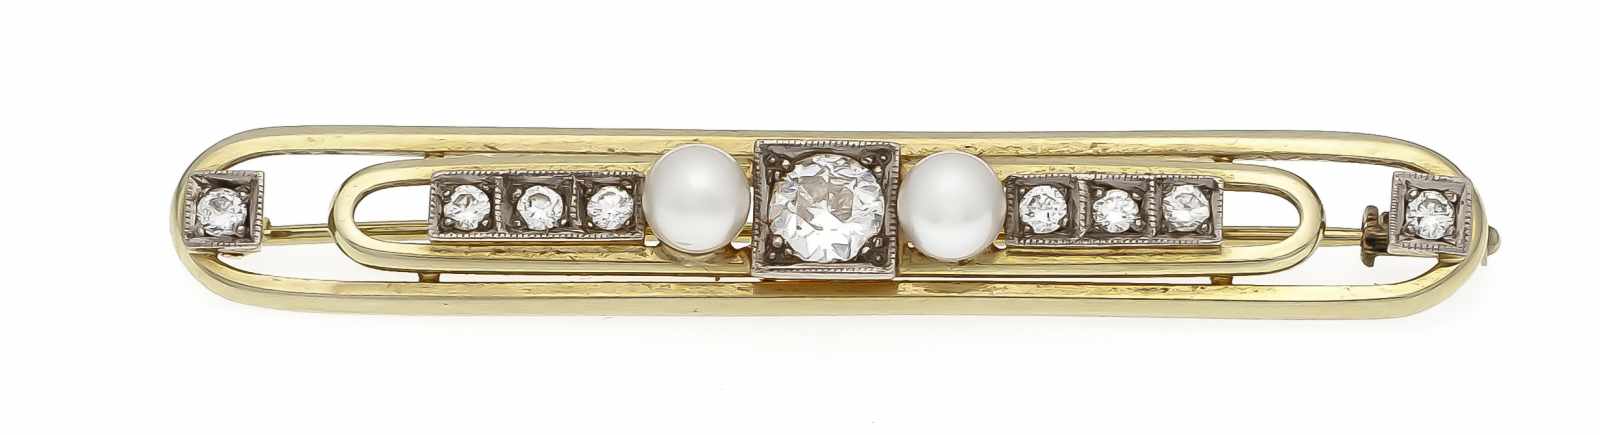 Altschliff-Diamant-Perlen-Brosche GG/WG 585/000 mit einem Altschliff-Diamanten 0,50 ctl.get.W/SI,